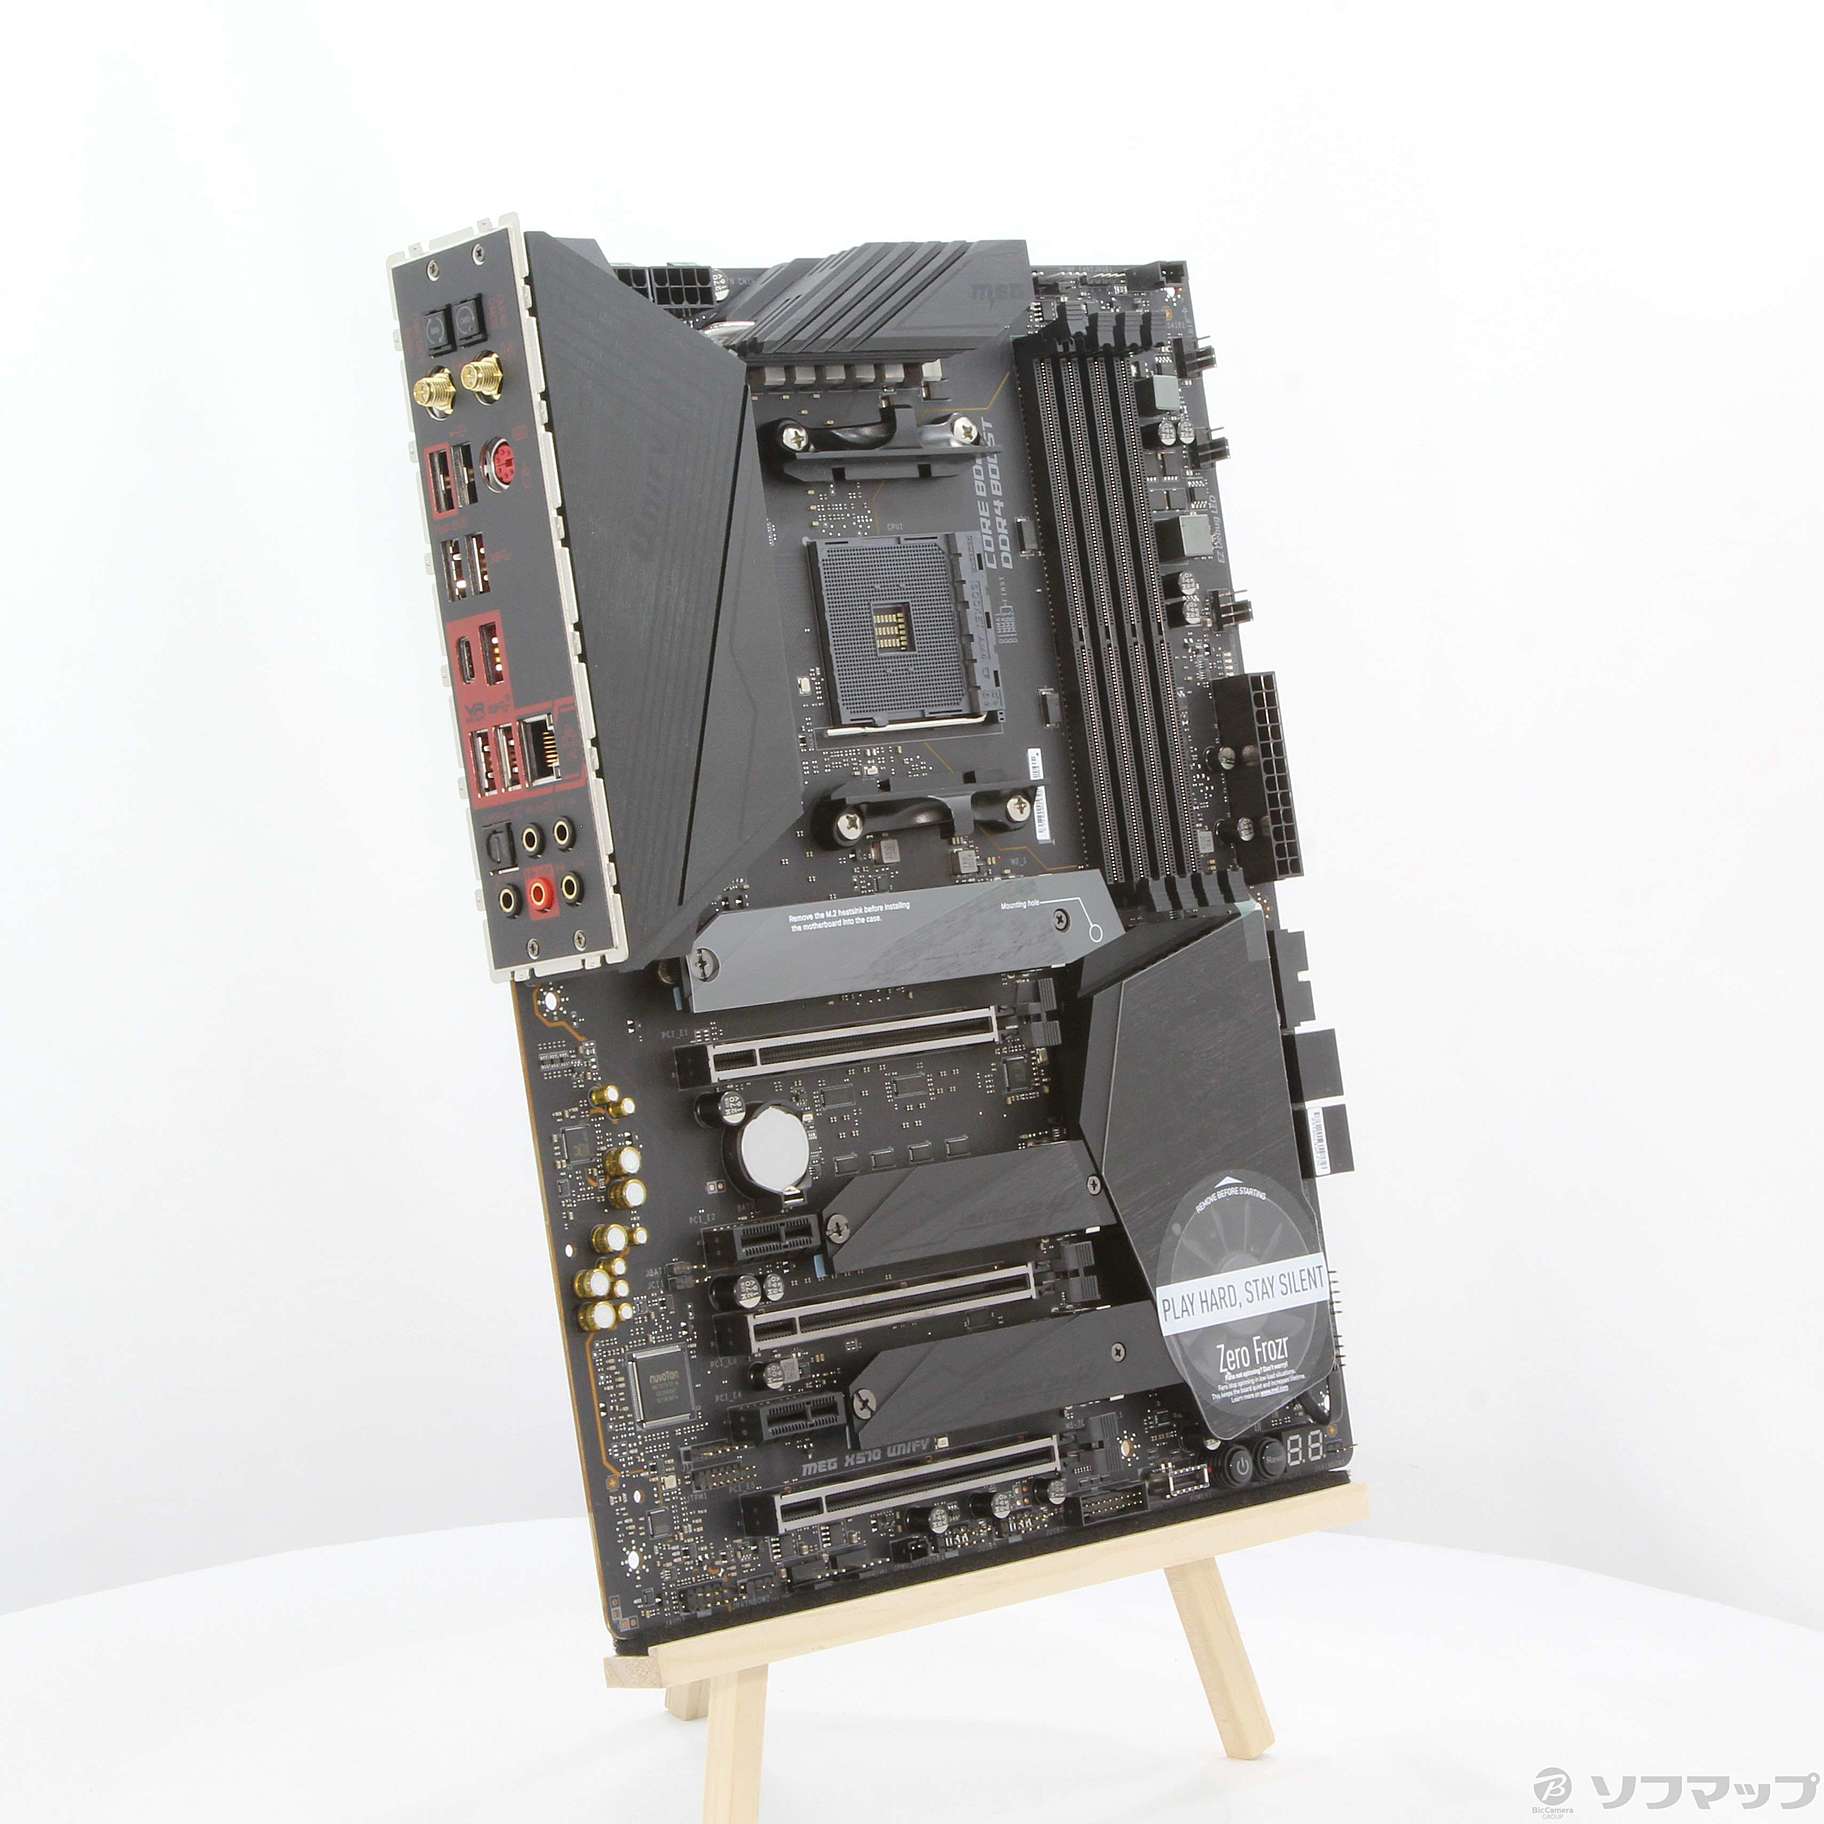 x570 unify msi ジャンク品PCパーツ